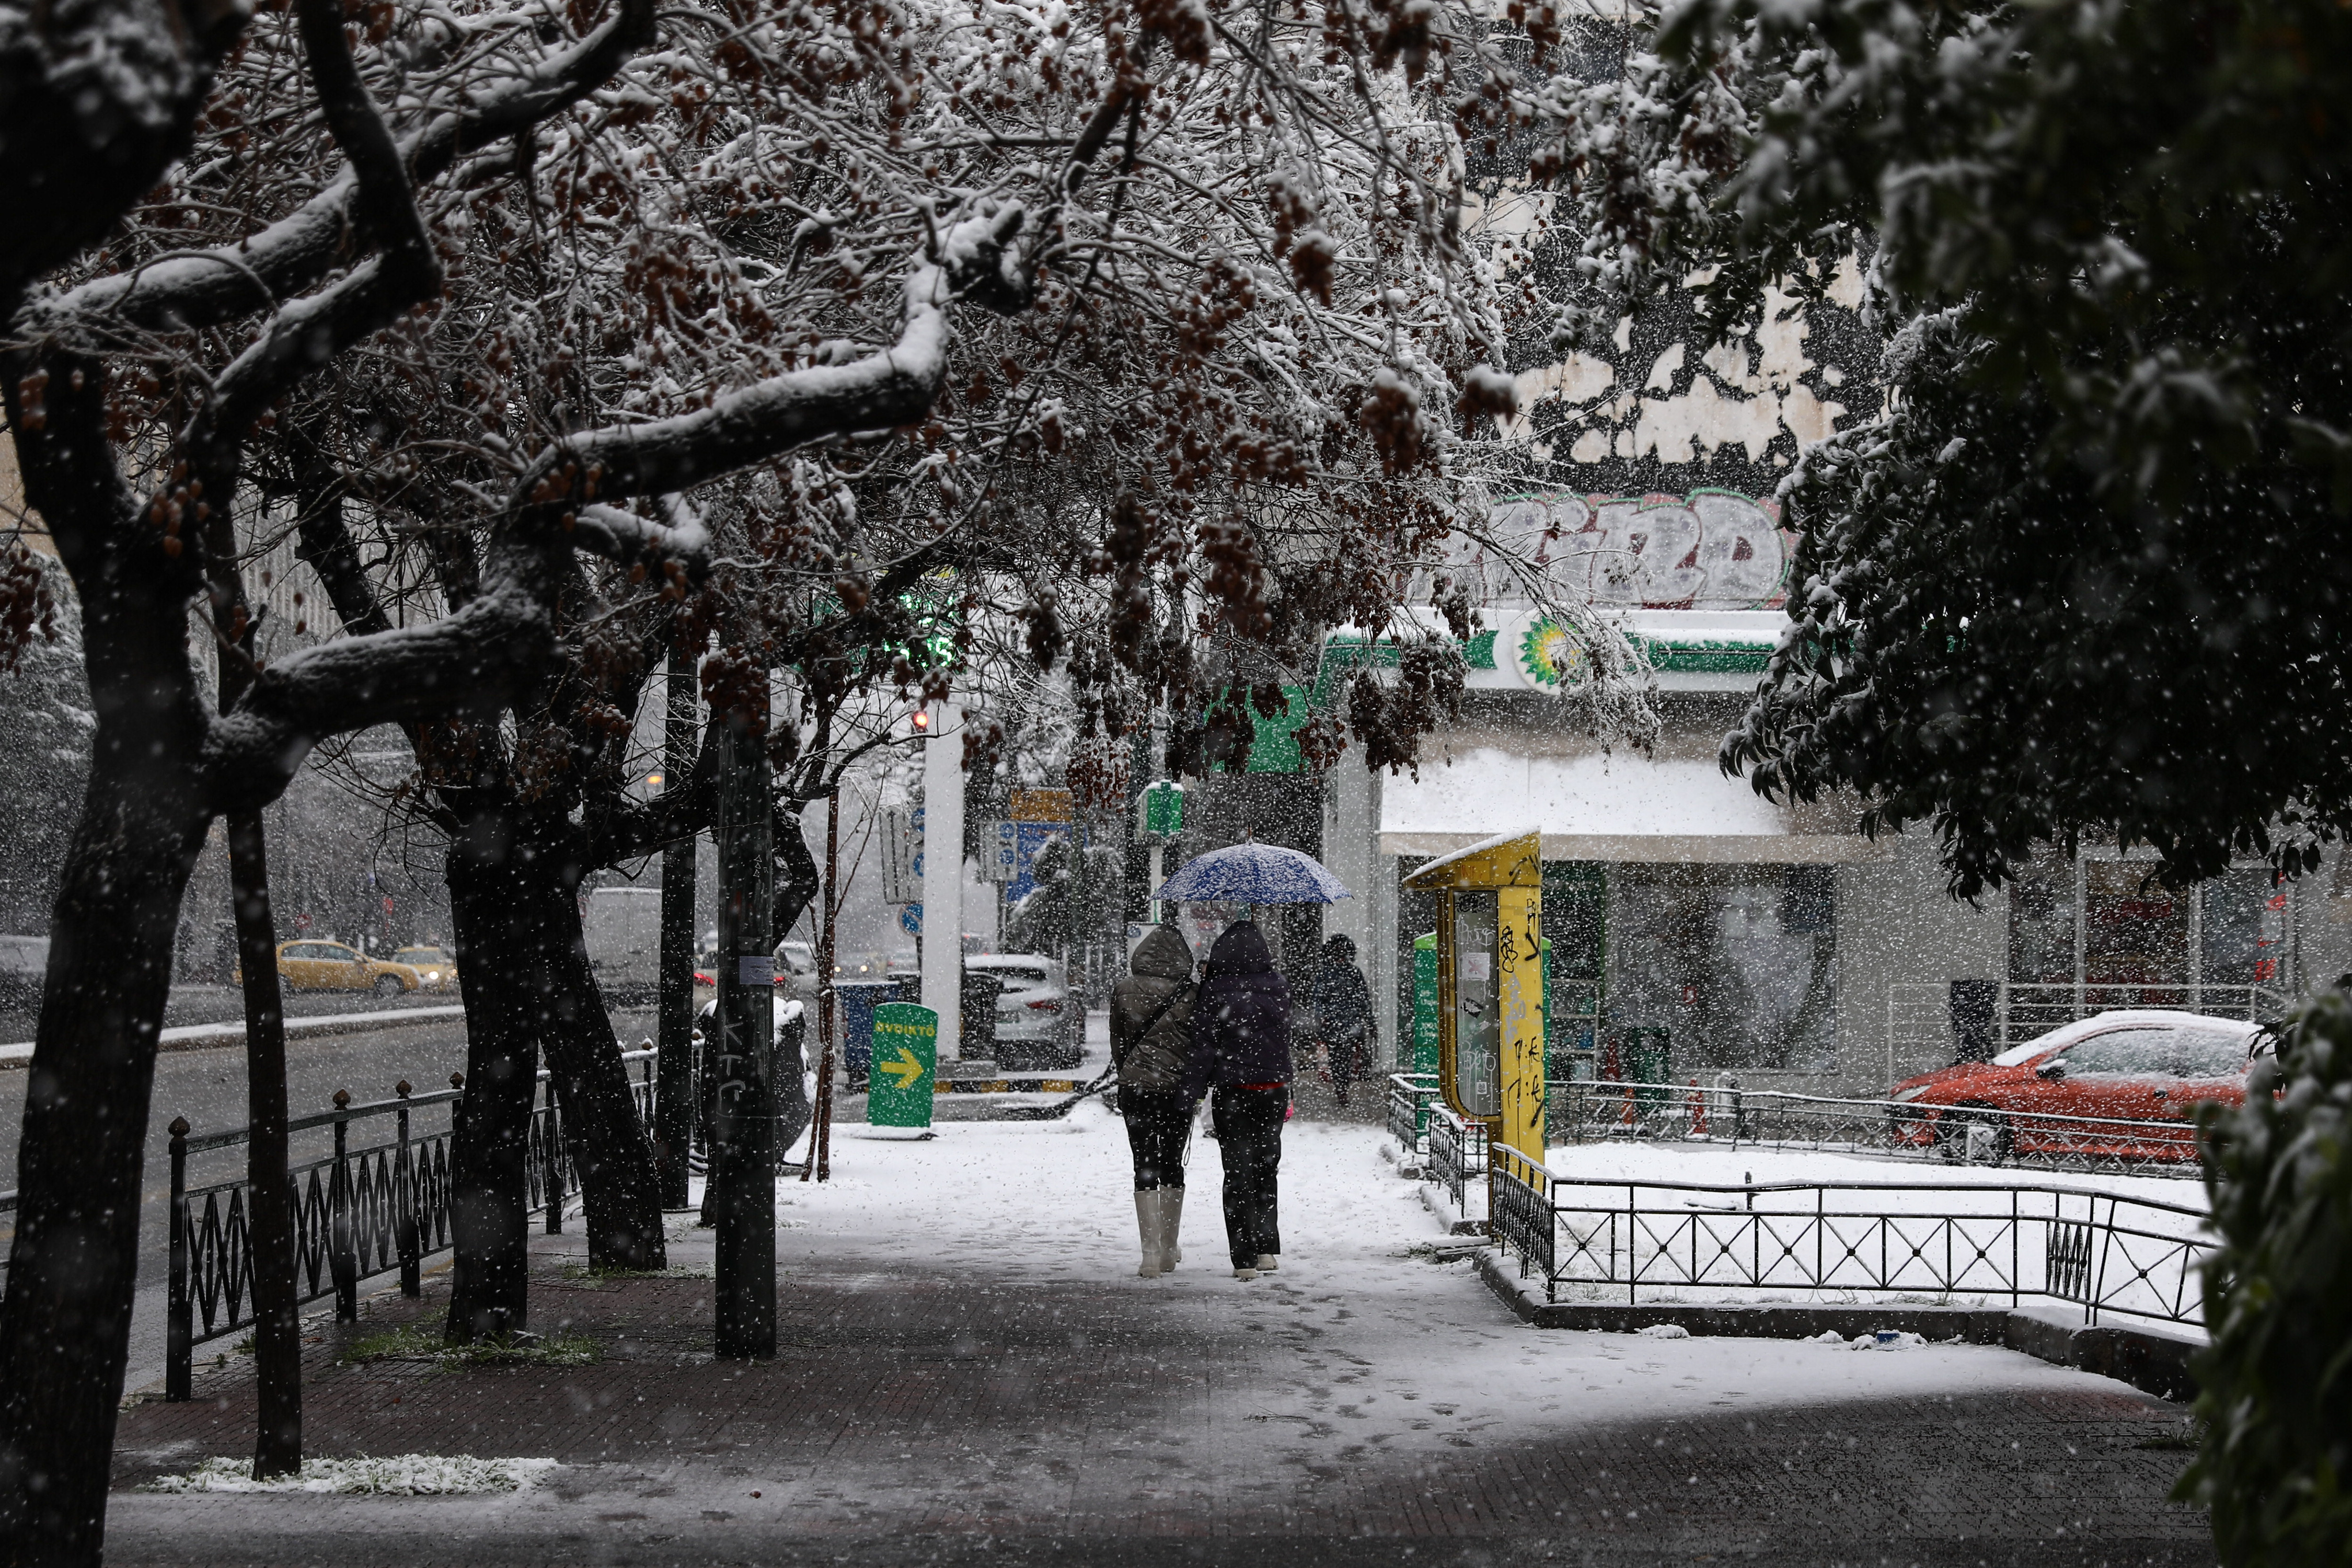 Atina'da kar yağışı